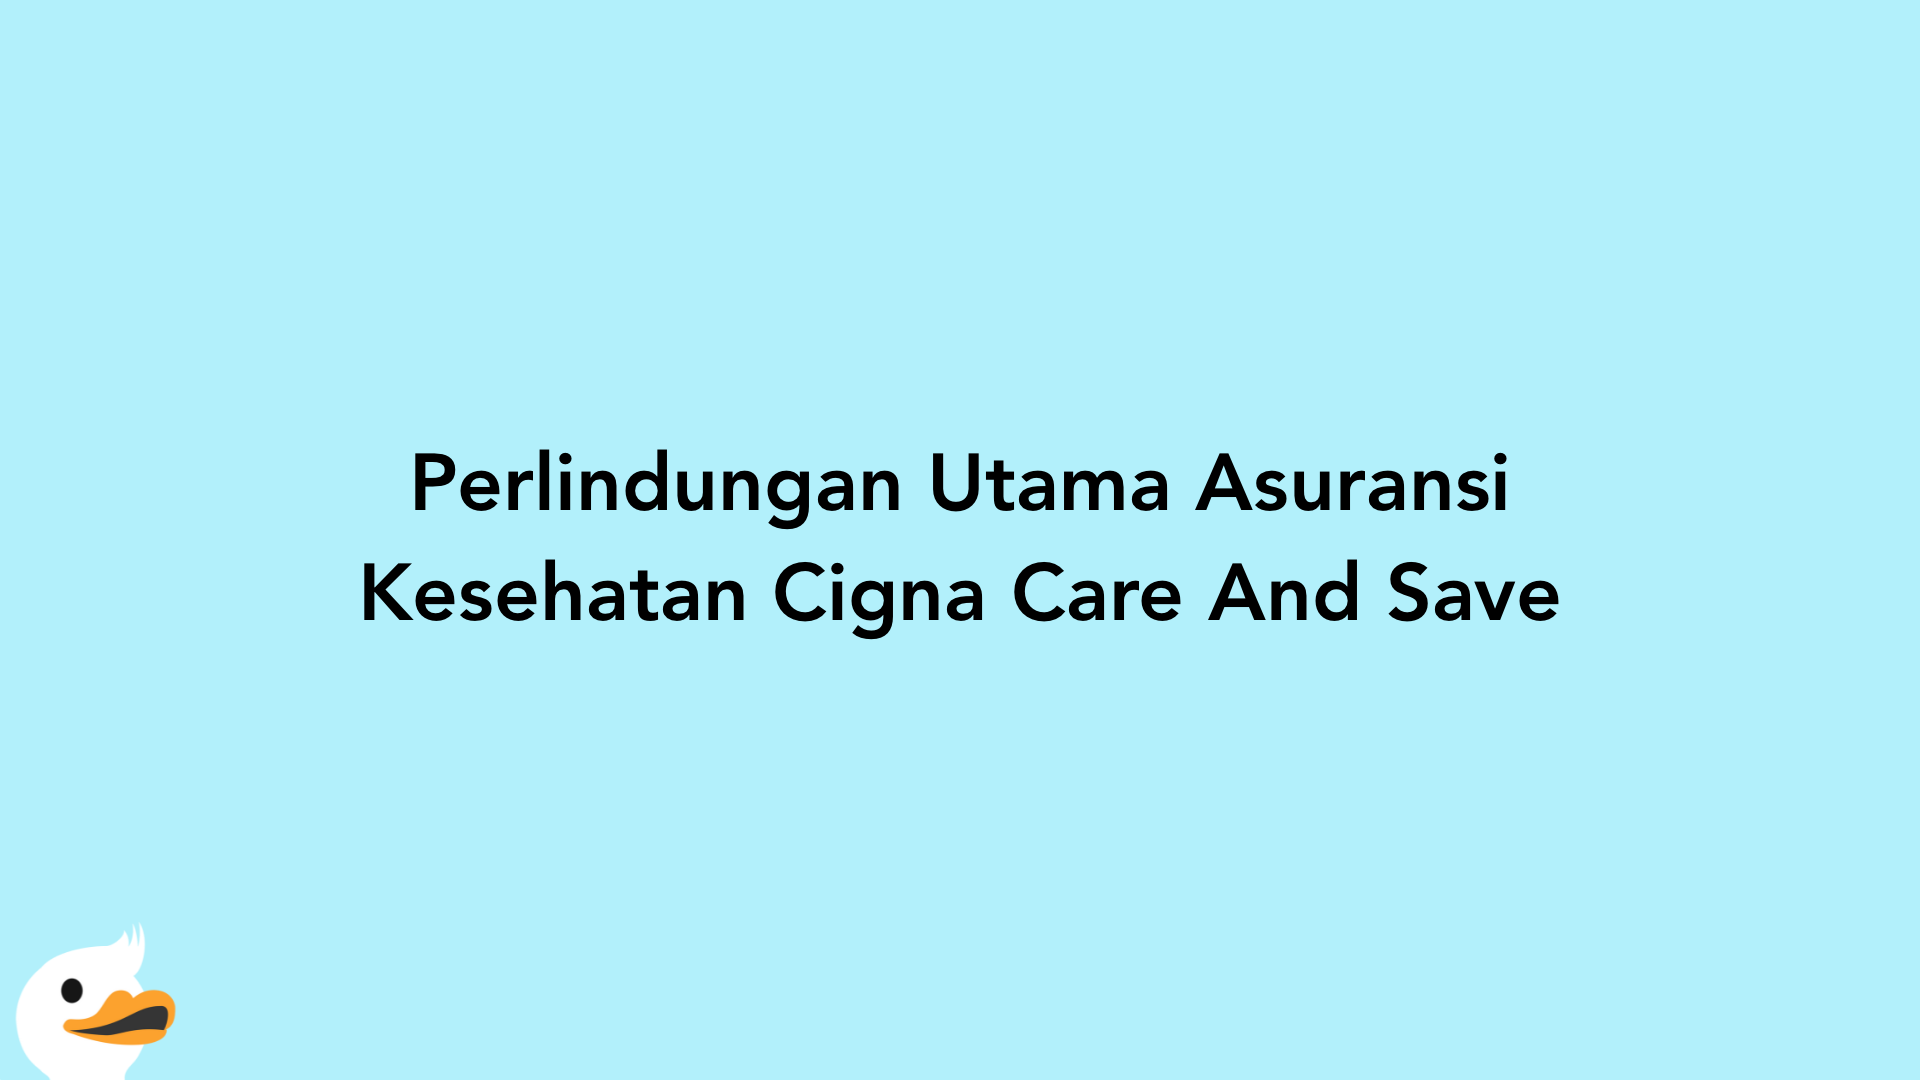 Perlindungan Utama Asuransi Kesehatan Cigna Care And Save